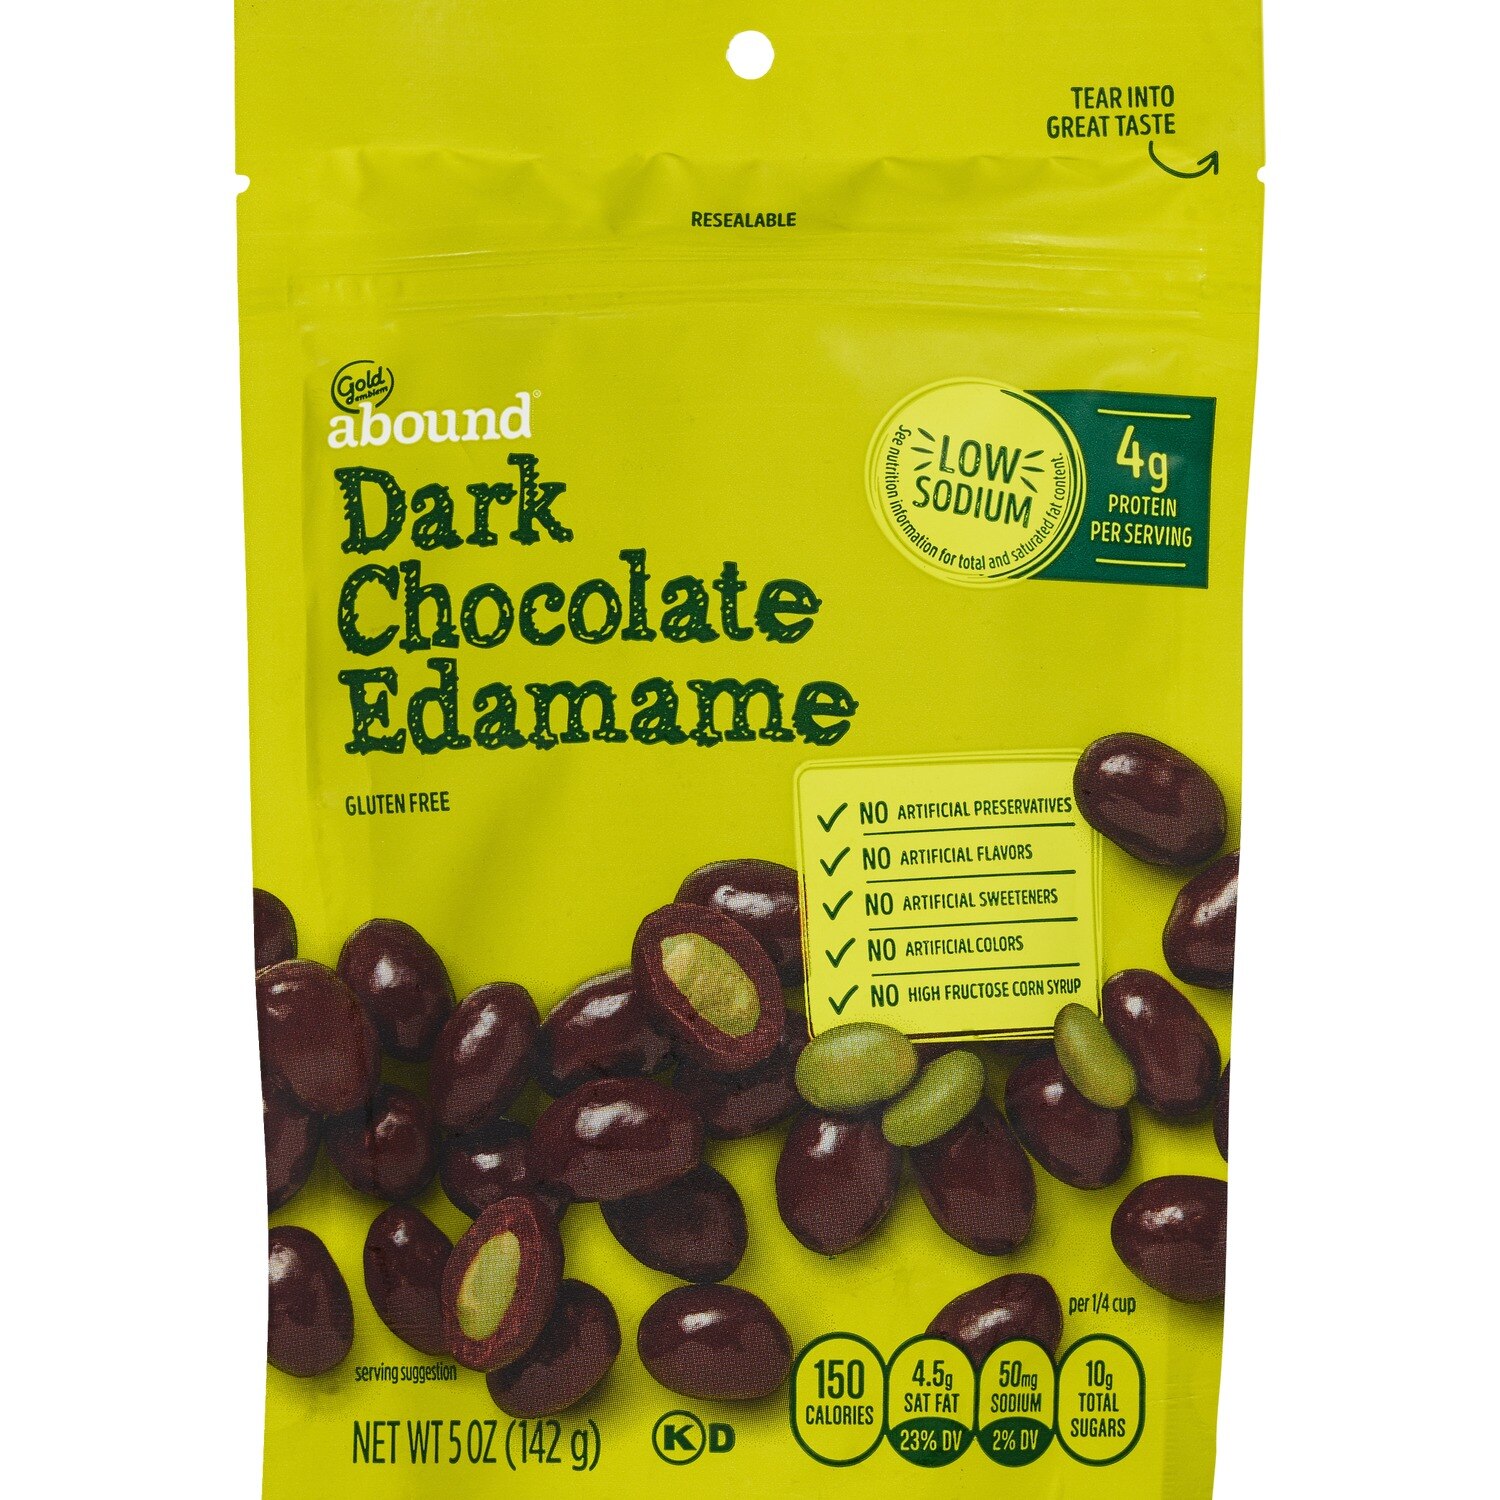 Gold Emblem Abound Dark Chocolate Edamame